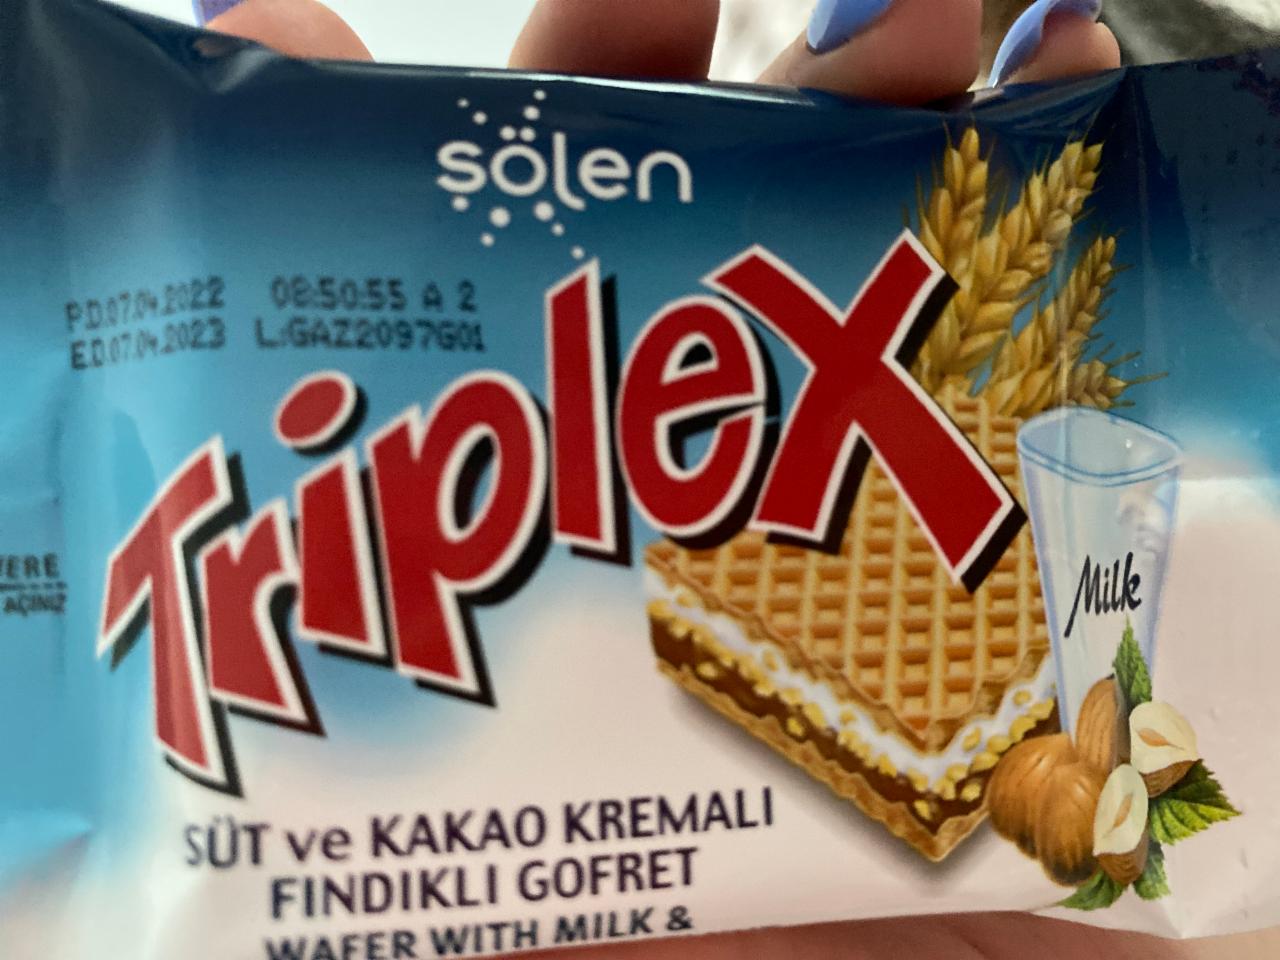 Фото - Triplex с молоком и какао кремом и фундуком Solen